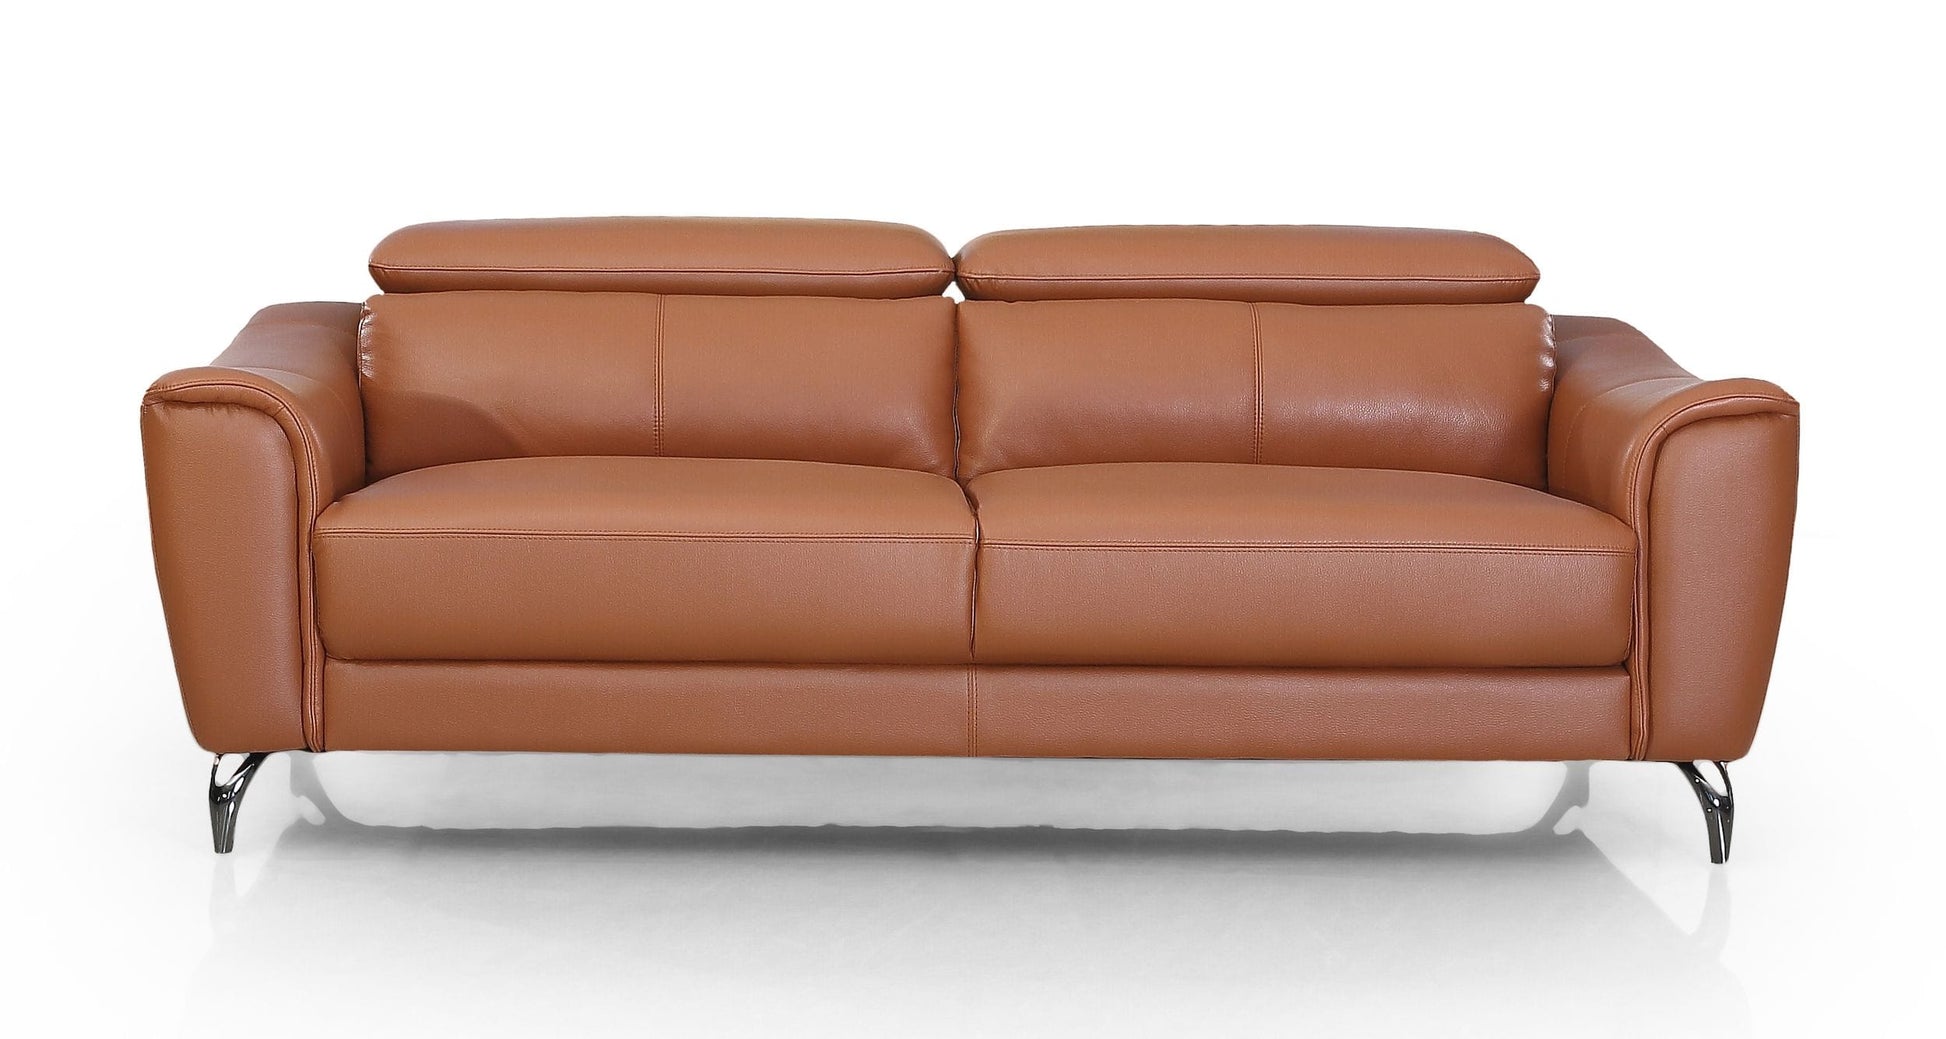 VIG Furniture Divani Casa Danis Cognac Leather Brown Sofa